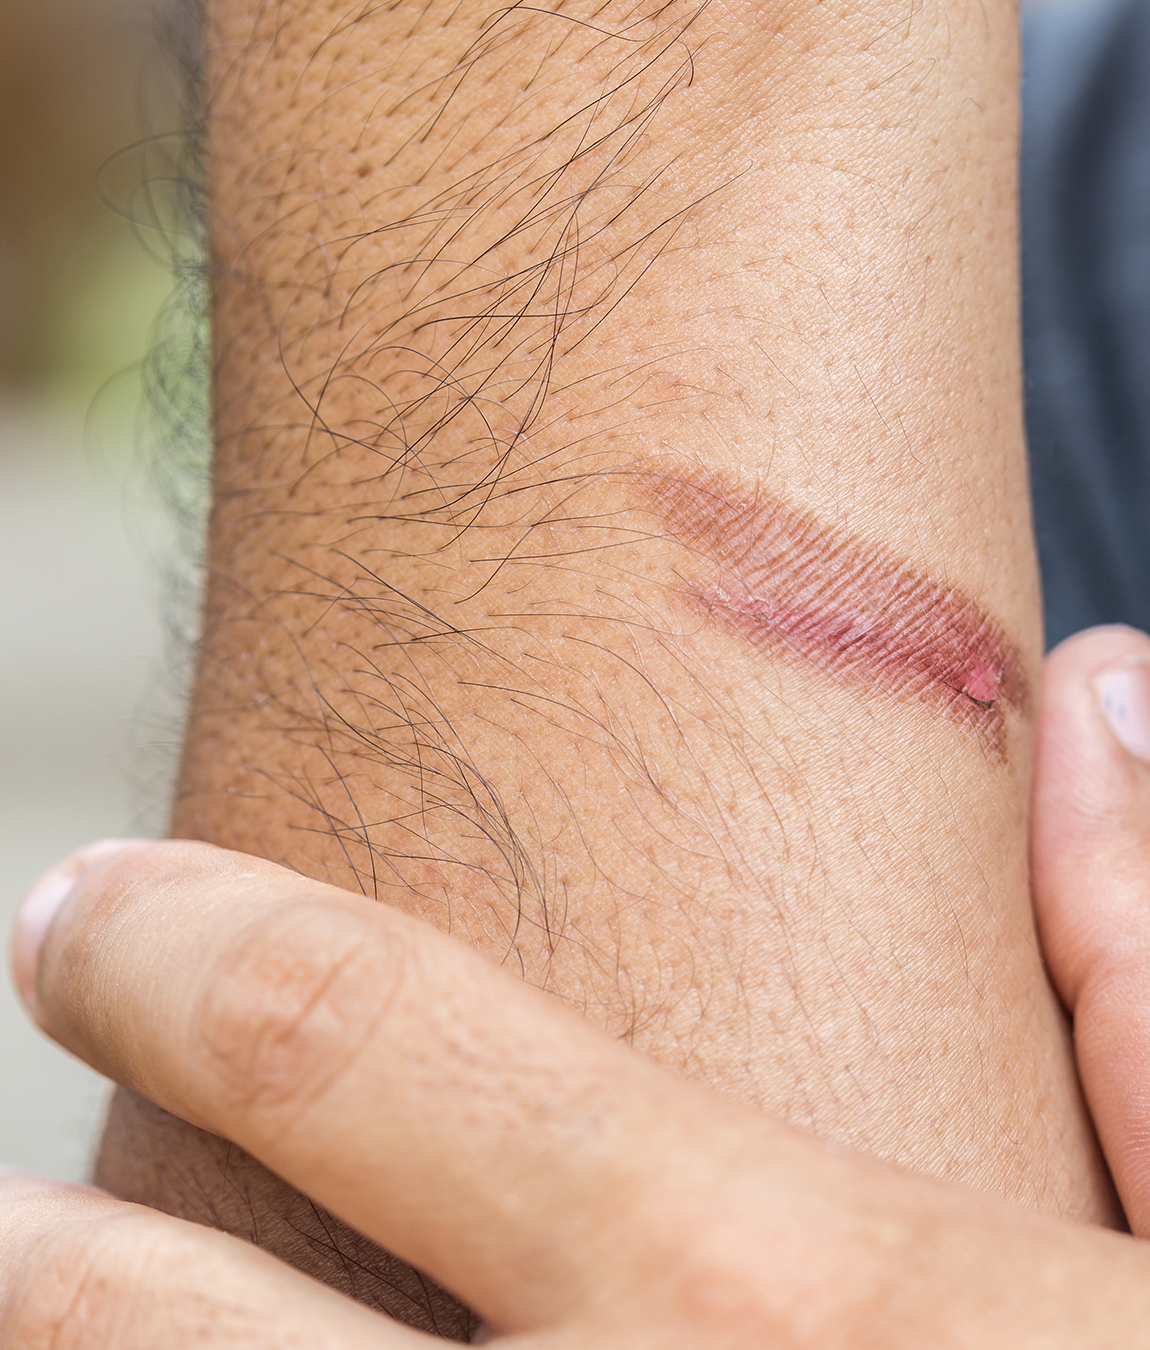 A burn mark on a man's arm